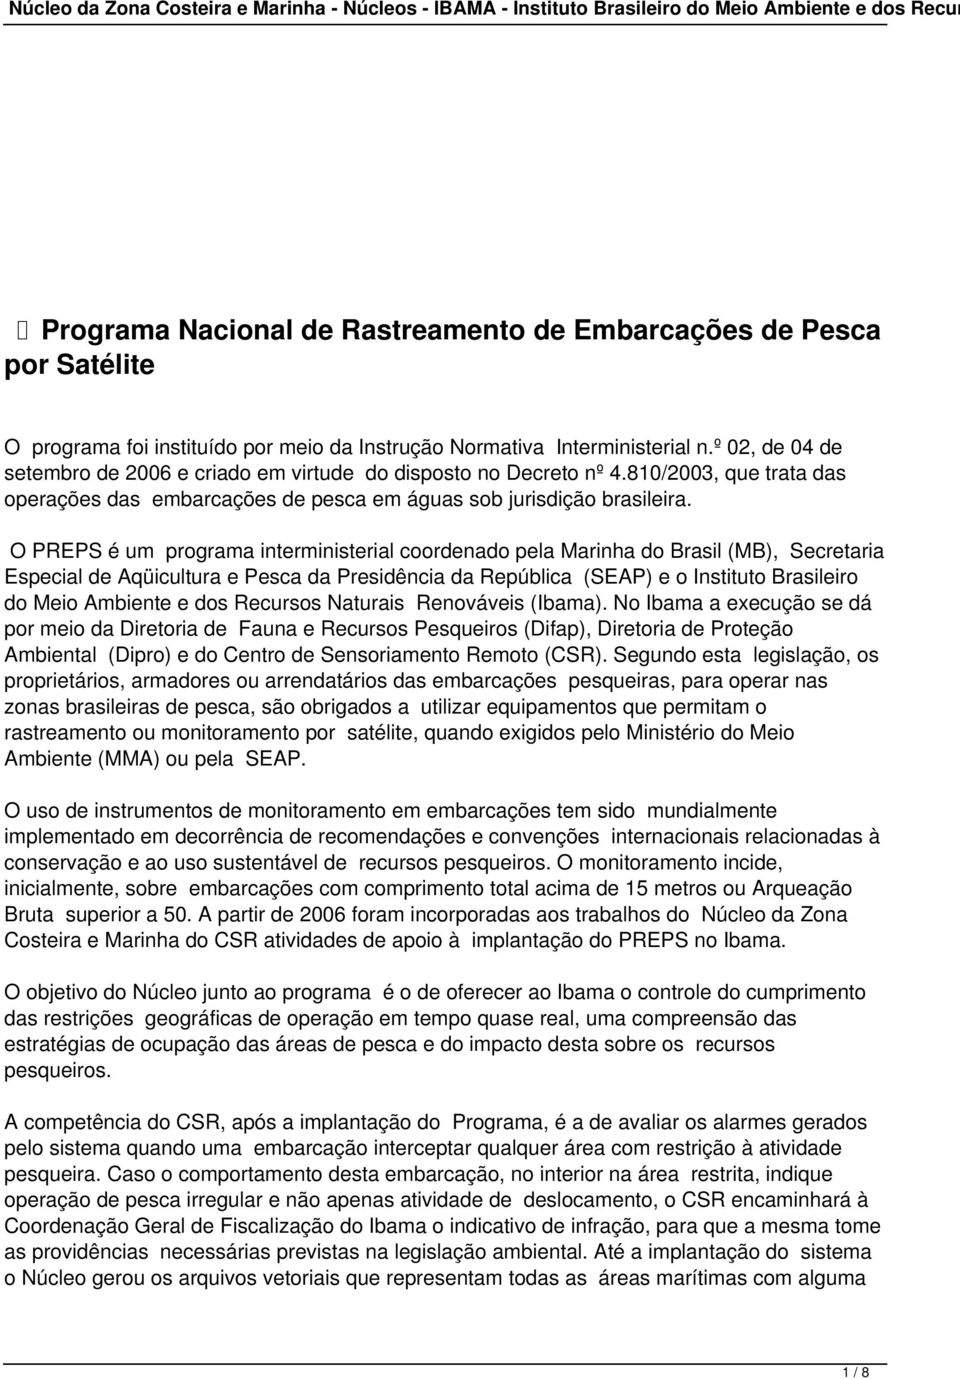 O PREPS é um programa interministerial coordenado pela Marinha do Brasil (MB), Secretaria Especial de Aqüicultura e Pesca da Presidência da República (SEAP) e o Instituto Brasileiro do Meio Ambiente